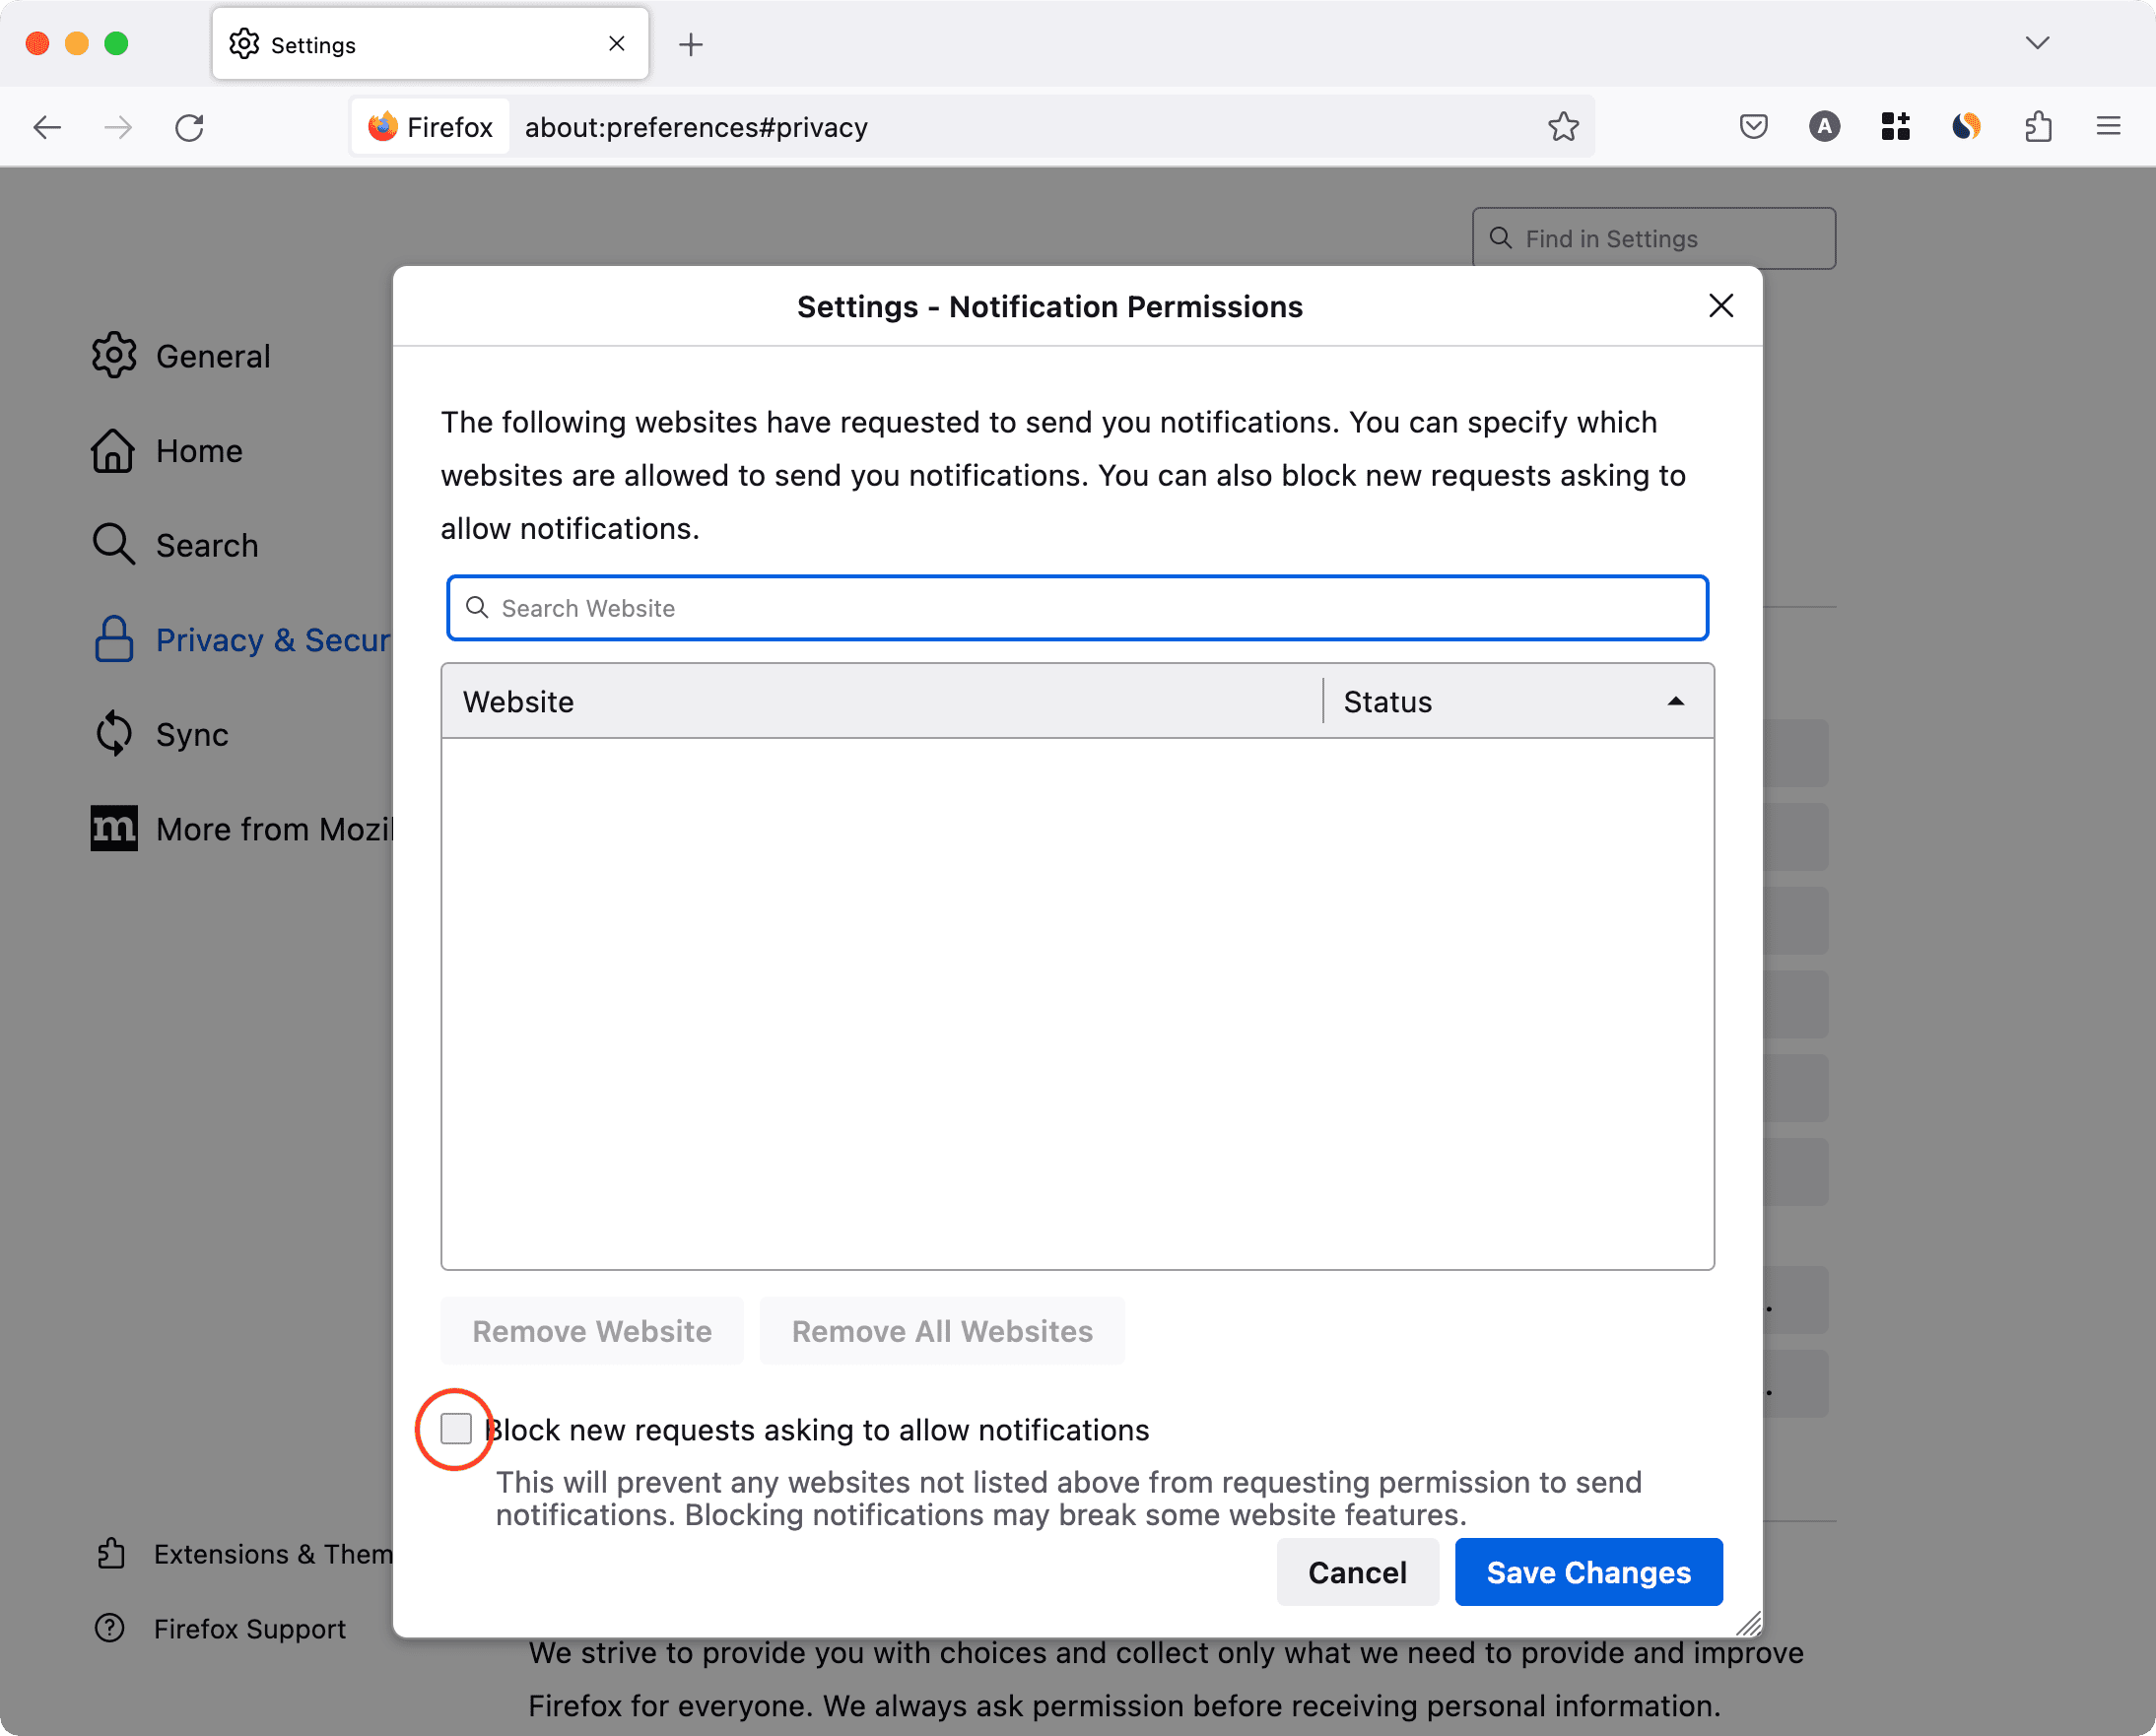 Bloquer les nouvelles requêtes demandant d'autoriser les notifications dans Firefox